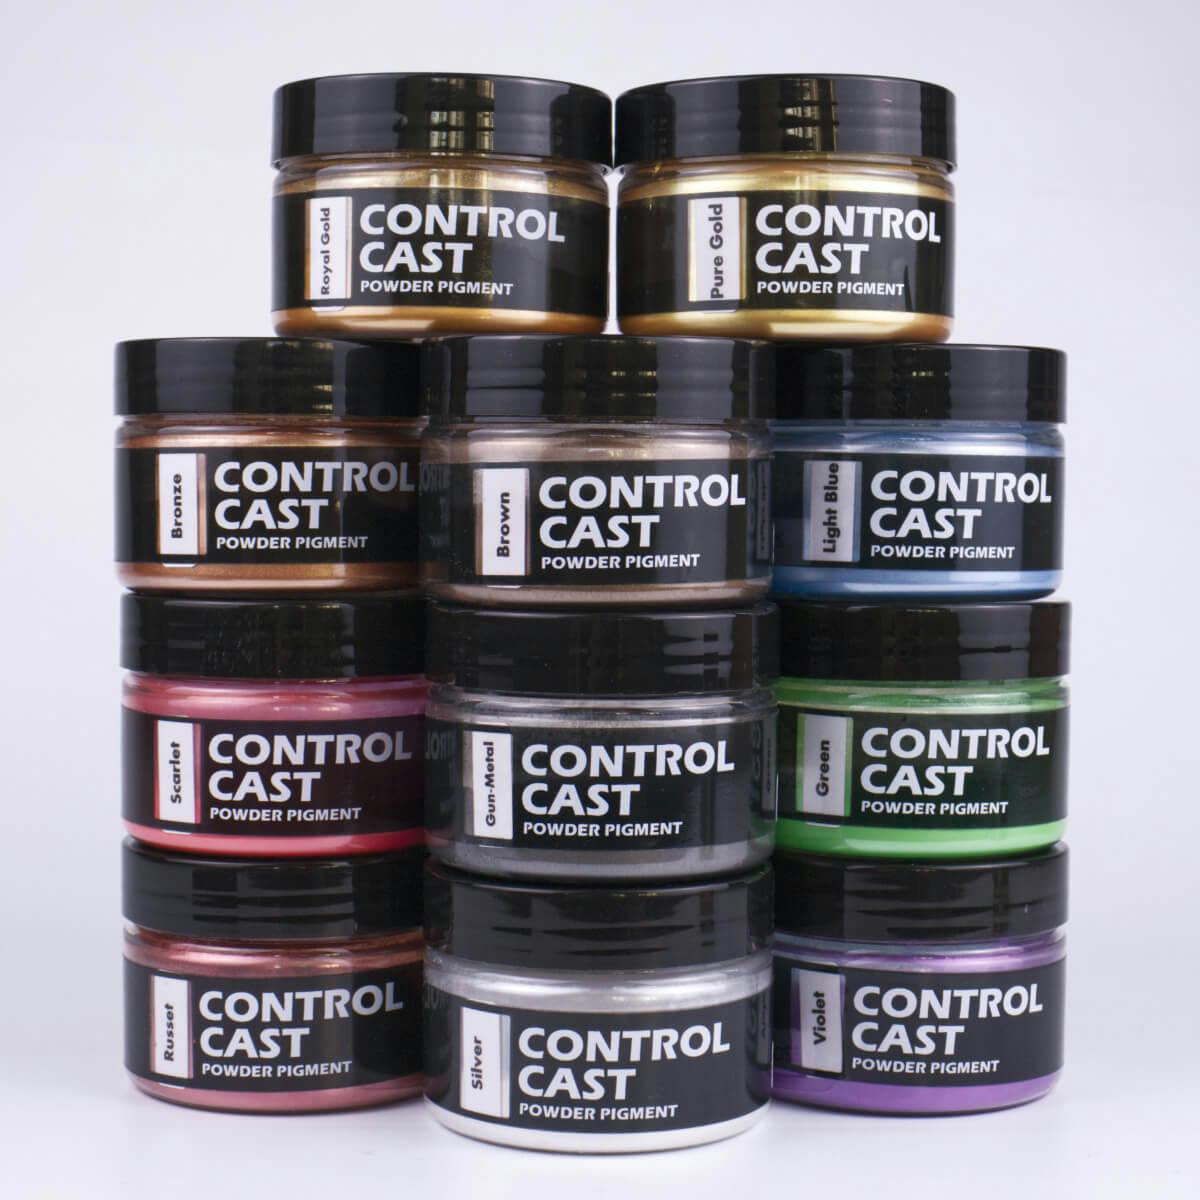 Ukázka všech jedenácti barev práškového pigmentu Control Cast s obsahem 20 gramů